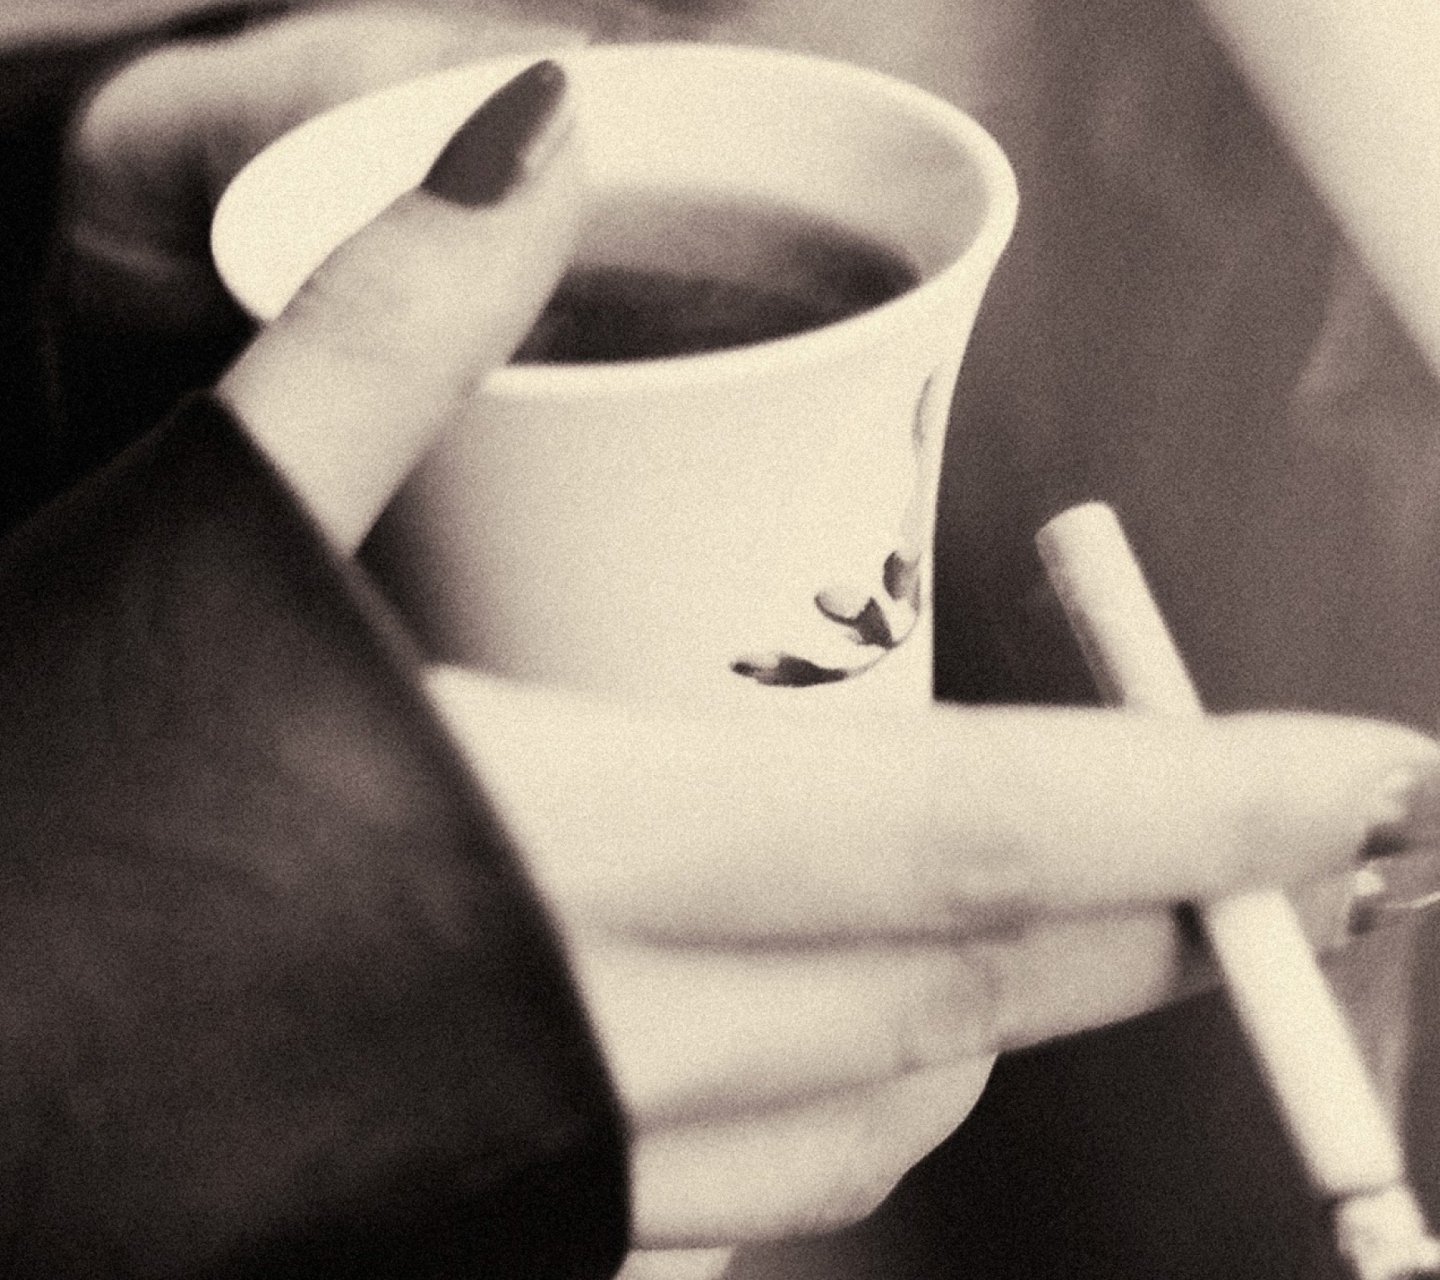 Das Hot Coffee In Her Hands Wallpaper 1440x1280